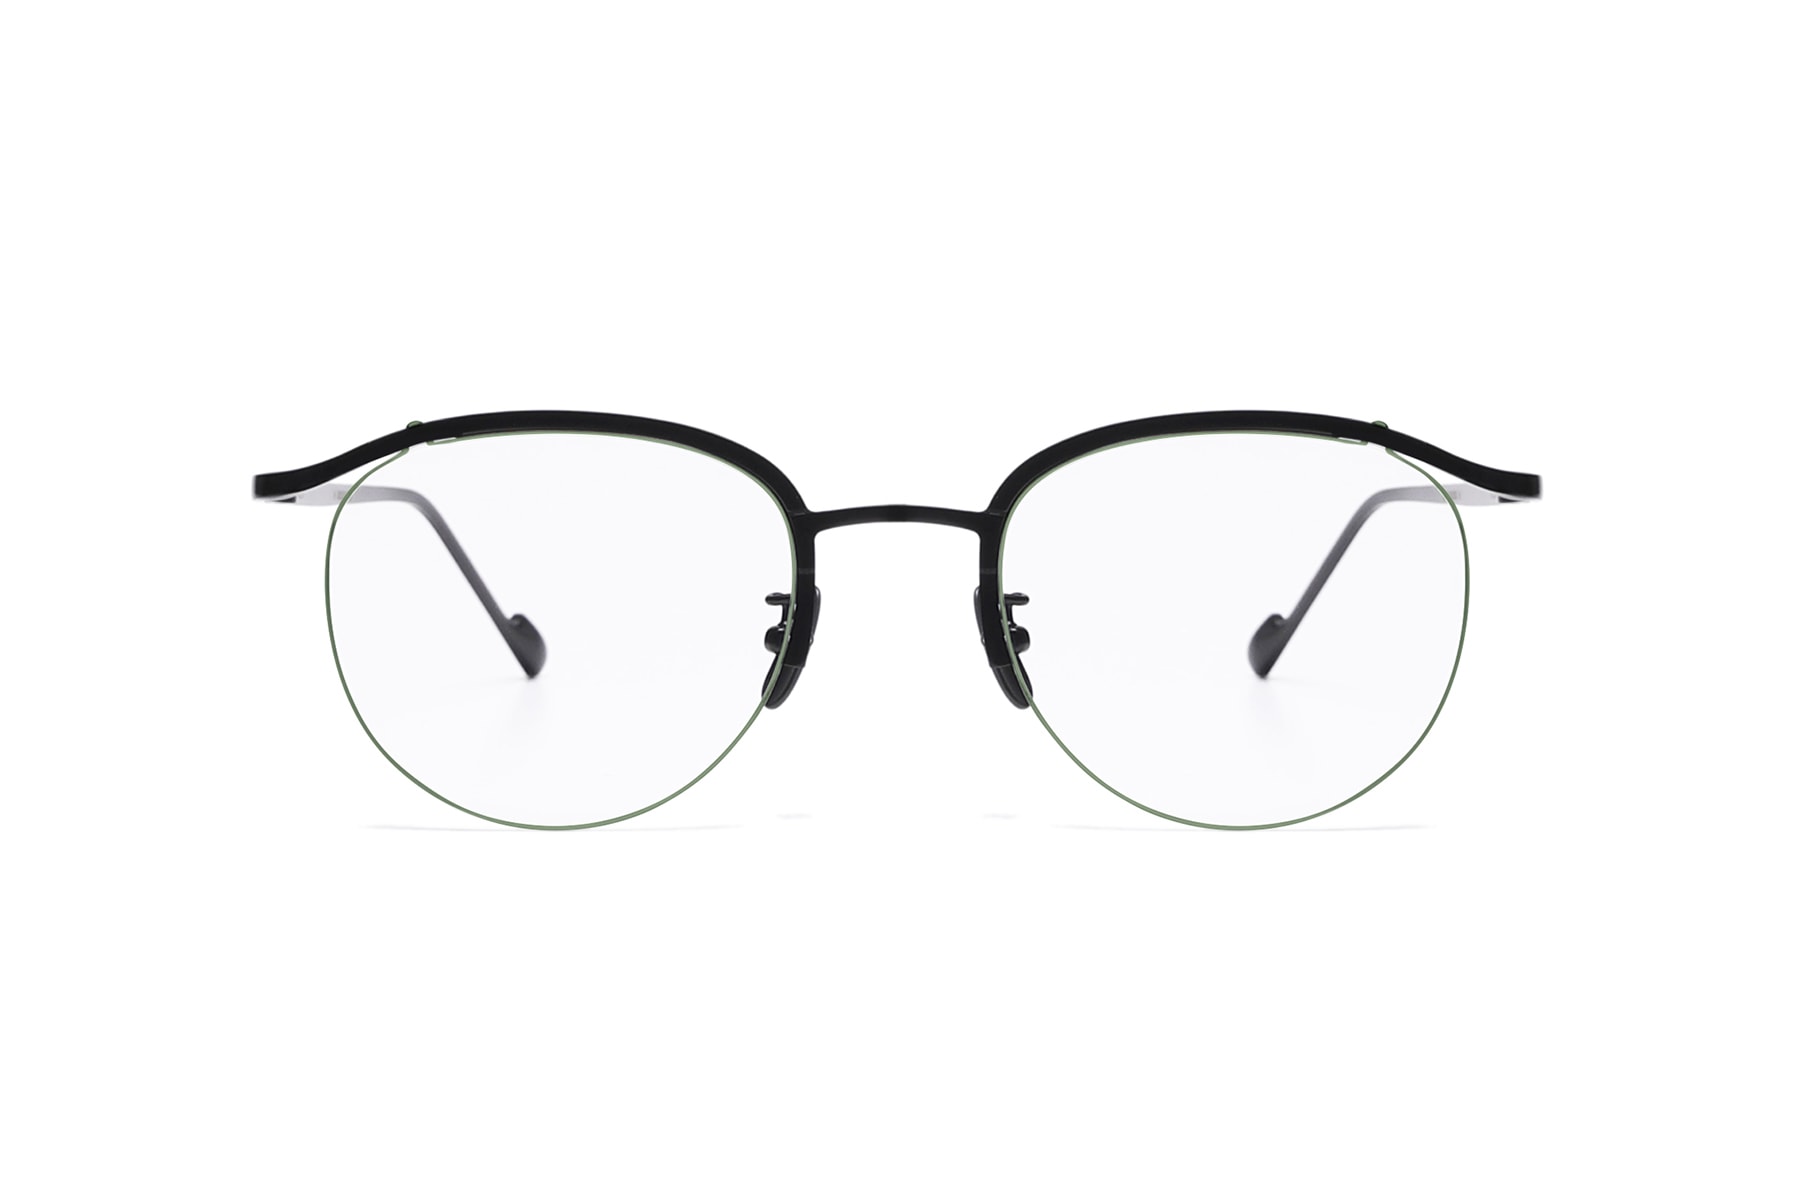 파라부트 스틸러 협업 아이웨어 안경 선글라스 페어즈 2018 paraboot stealer collaboration pairz eyewear glasses sunglasses